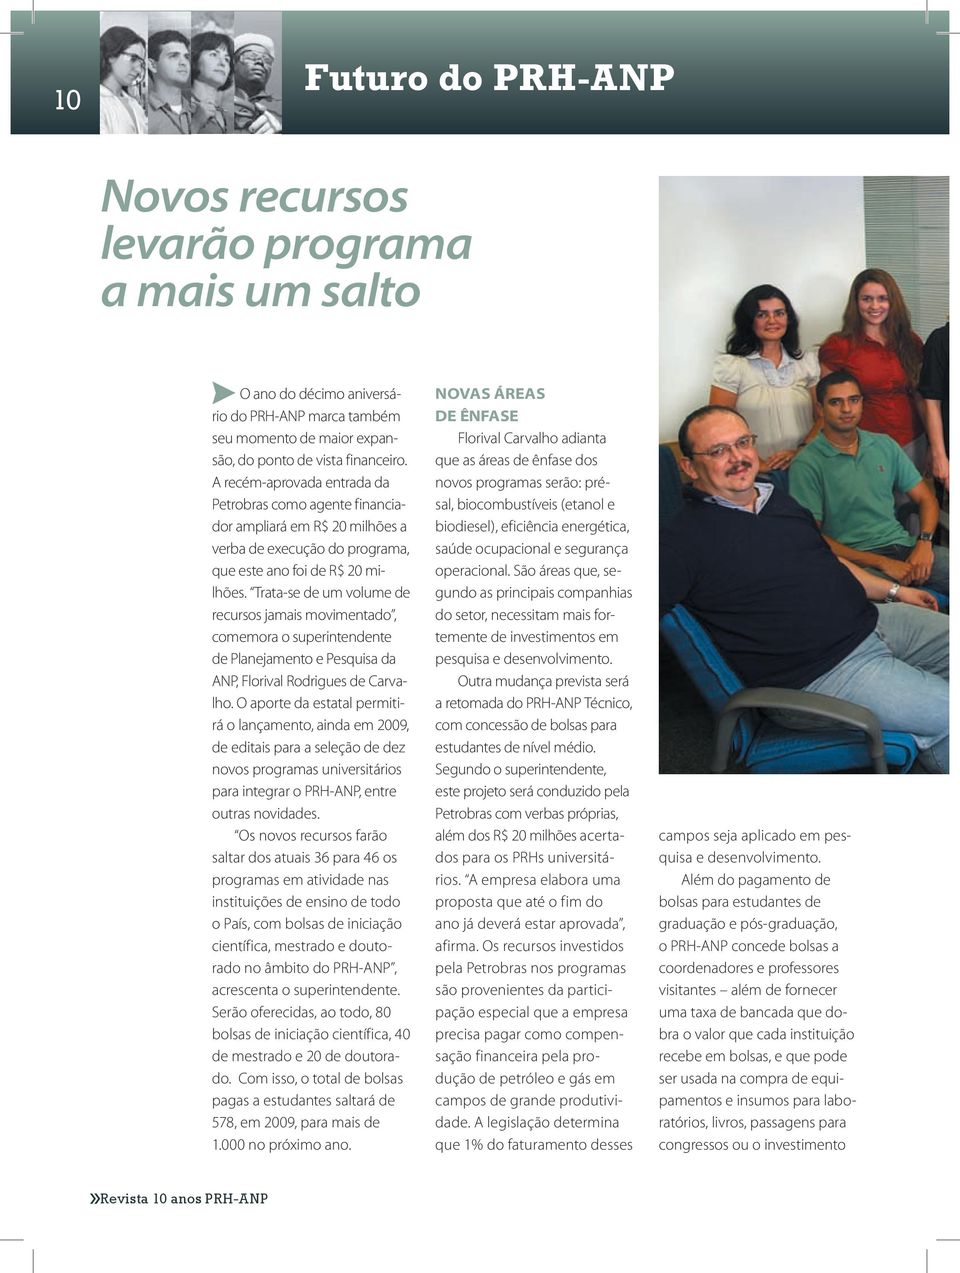 Trata-se de um volume de recursos jamais movimentado, comemora o superintendente de Planejamento e Pesquisa da ANP, Florival Rodrigues de Carvalho.